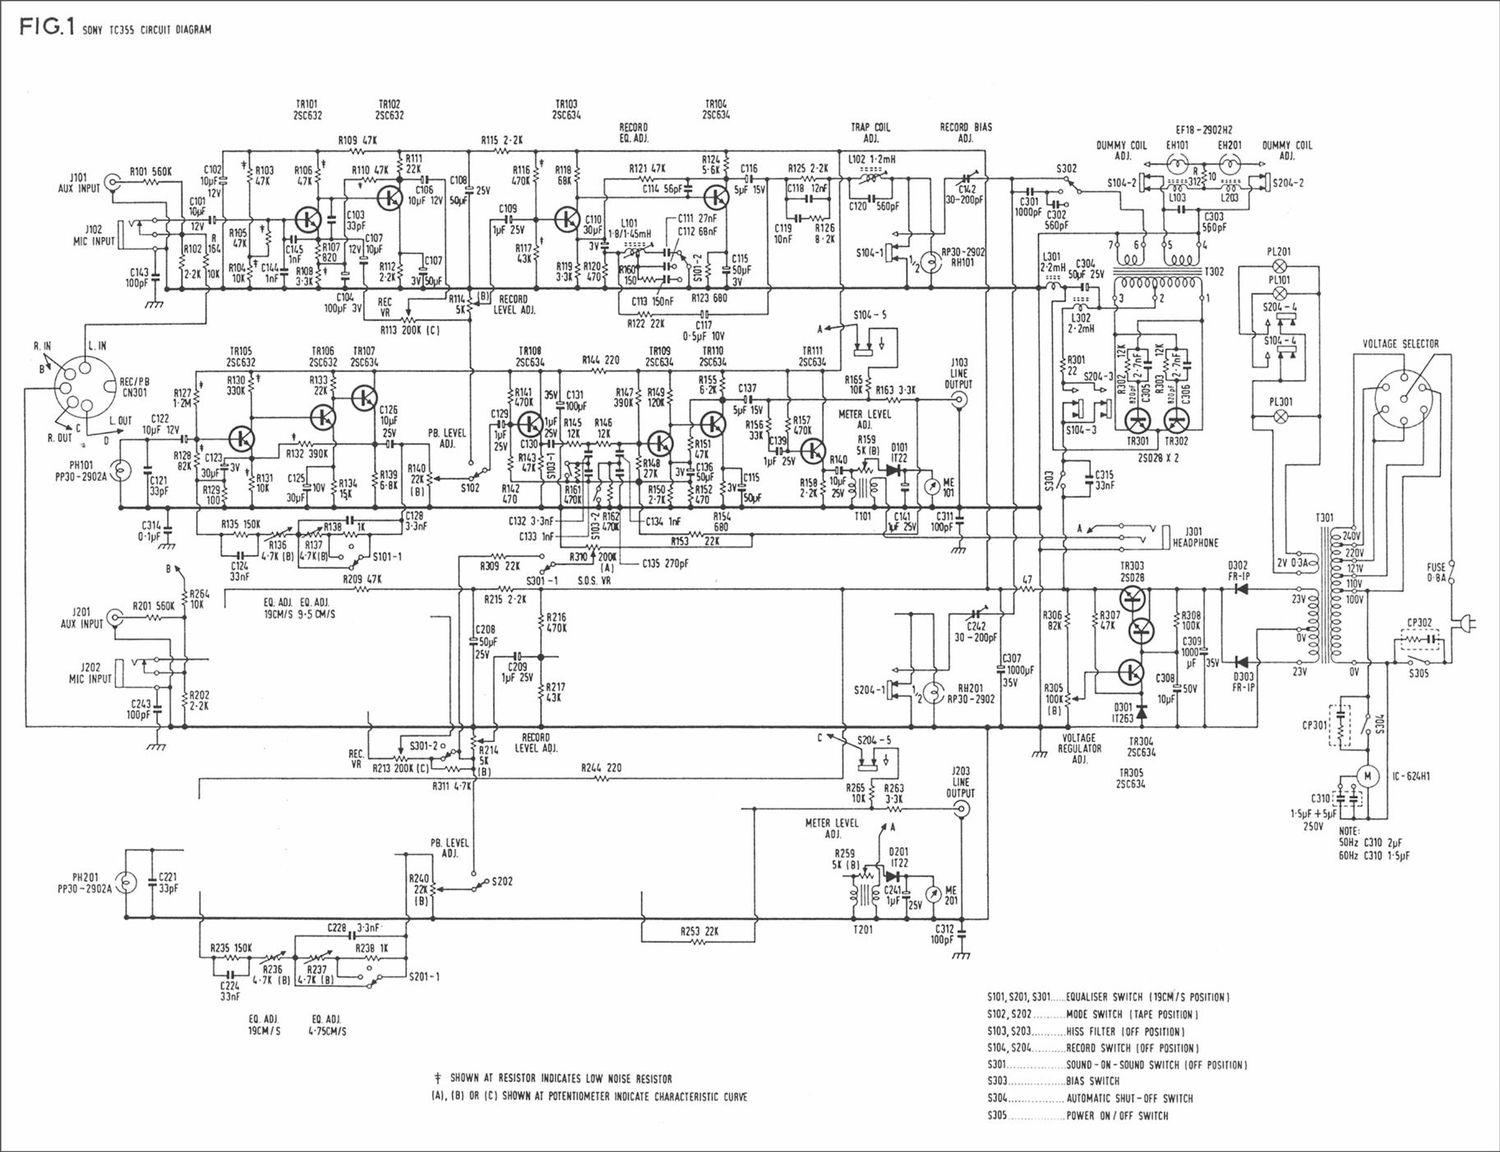 sony tc 355 schematic